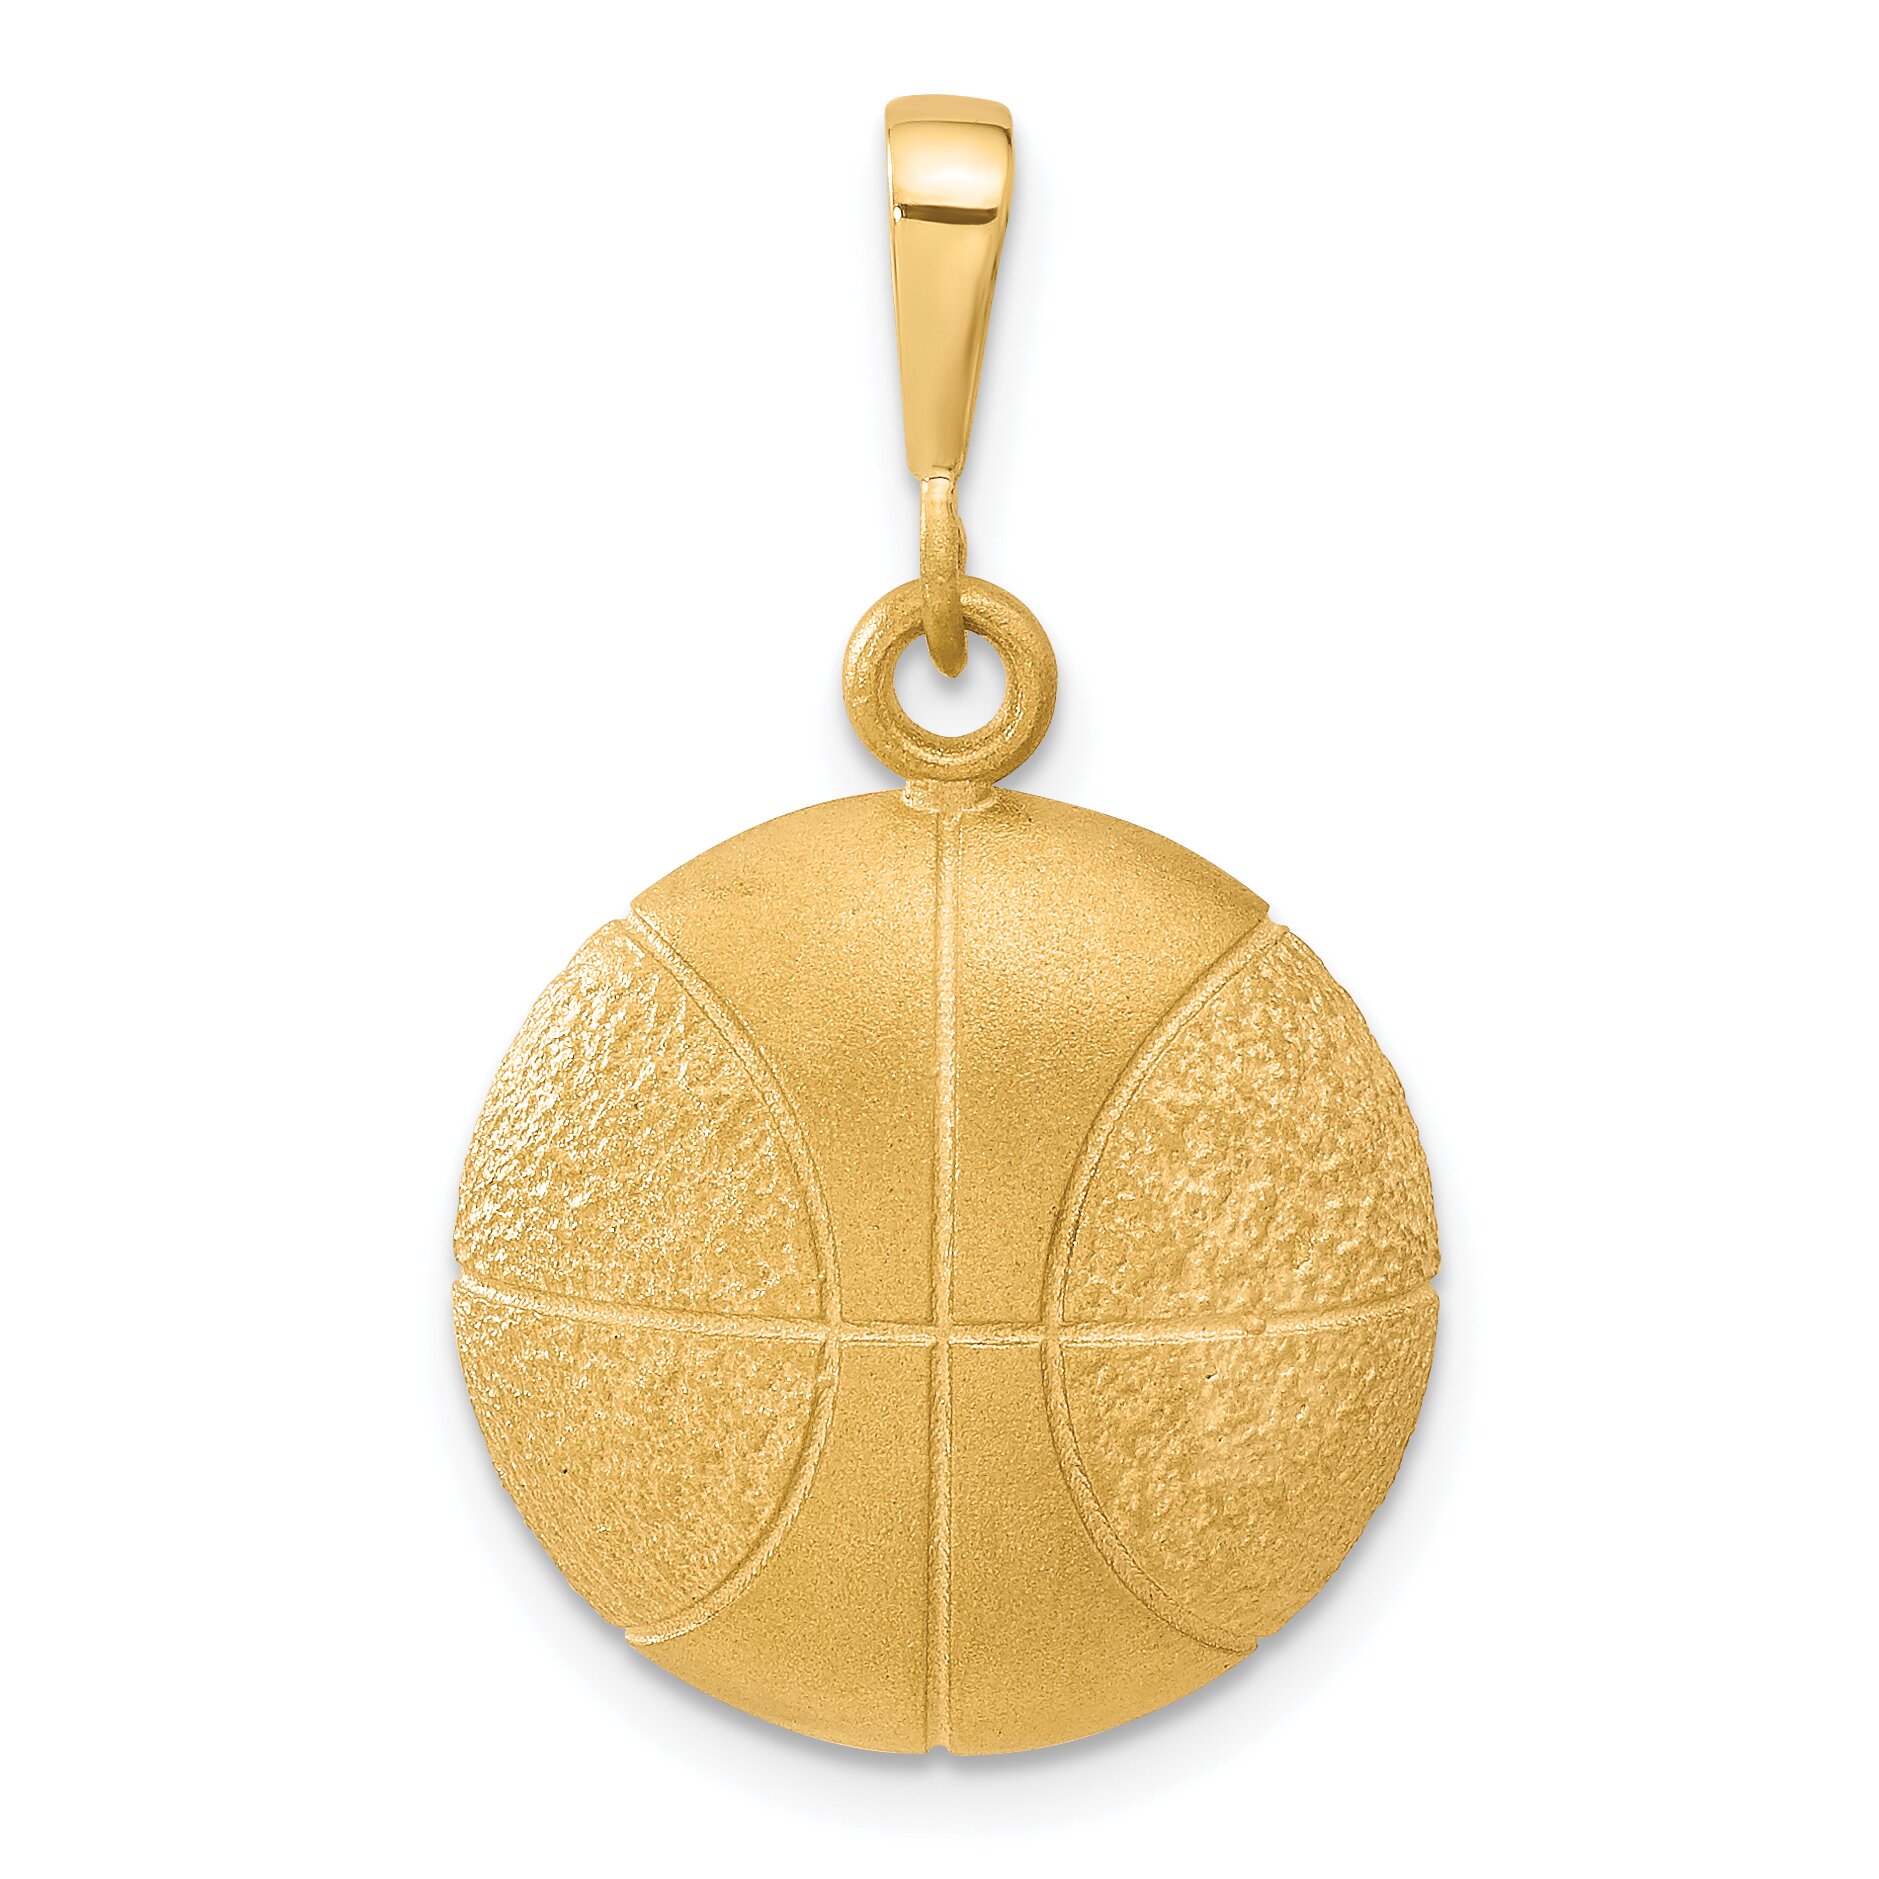 Findingking 10K Gold Basketball Charm